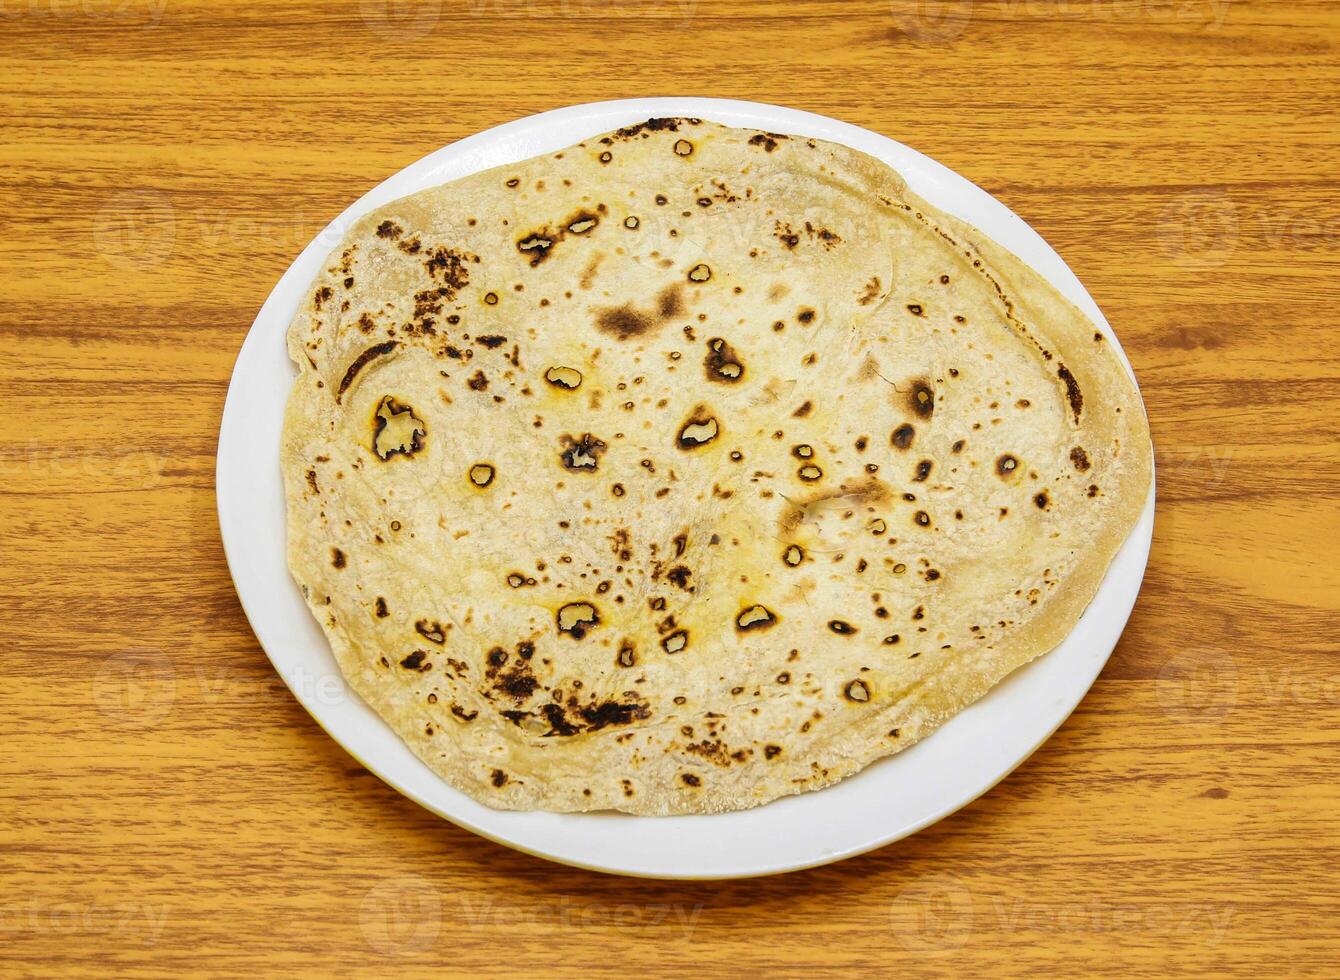 romali chapati roti eras i tallrik isolerat på tabell topp se av indisk och pakistansk kryddad mat foto